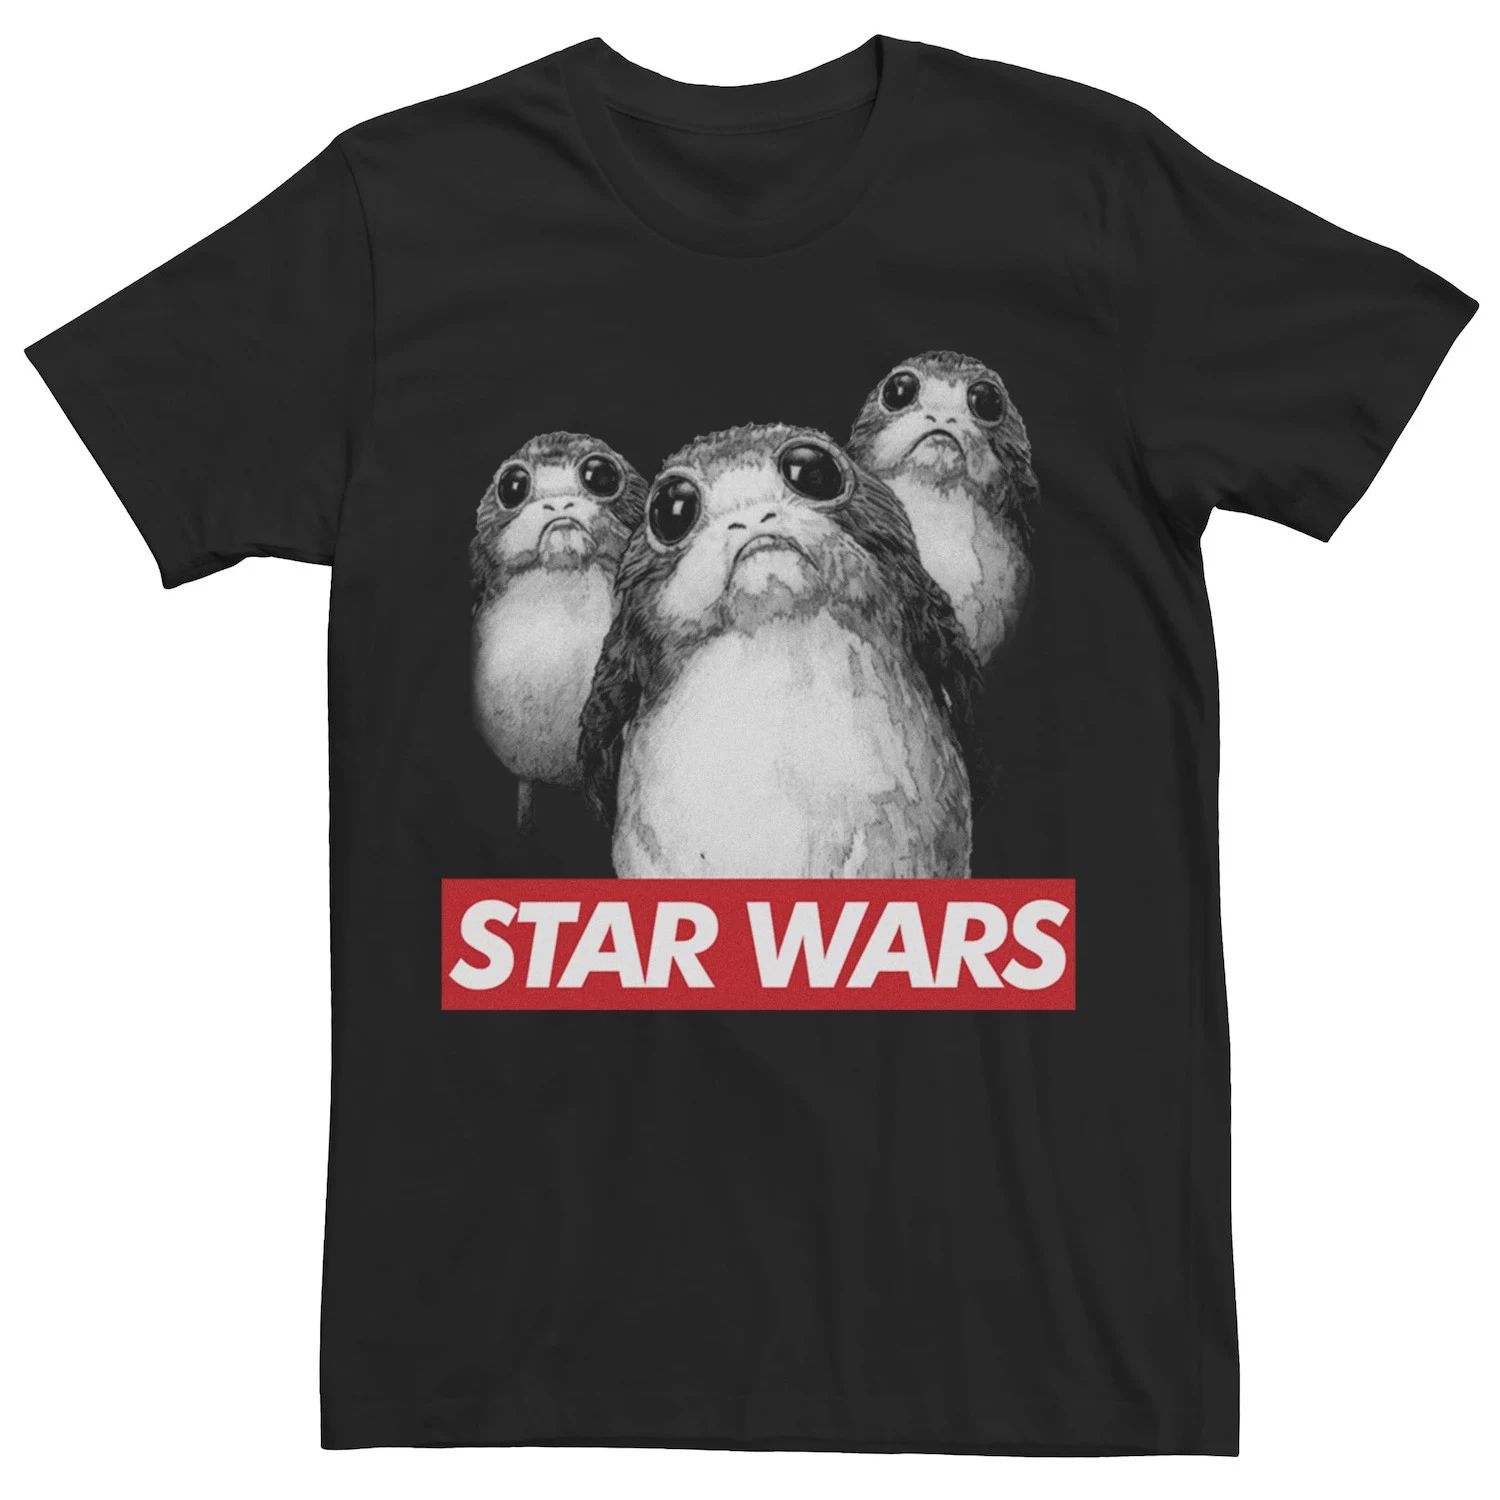 Мужская футболка с плакатом «Звездные войны» Porgalicious Star Wars